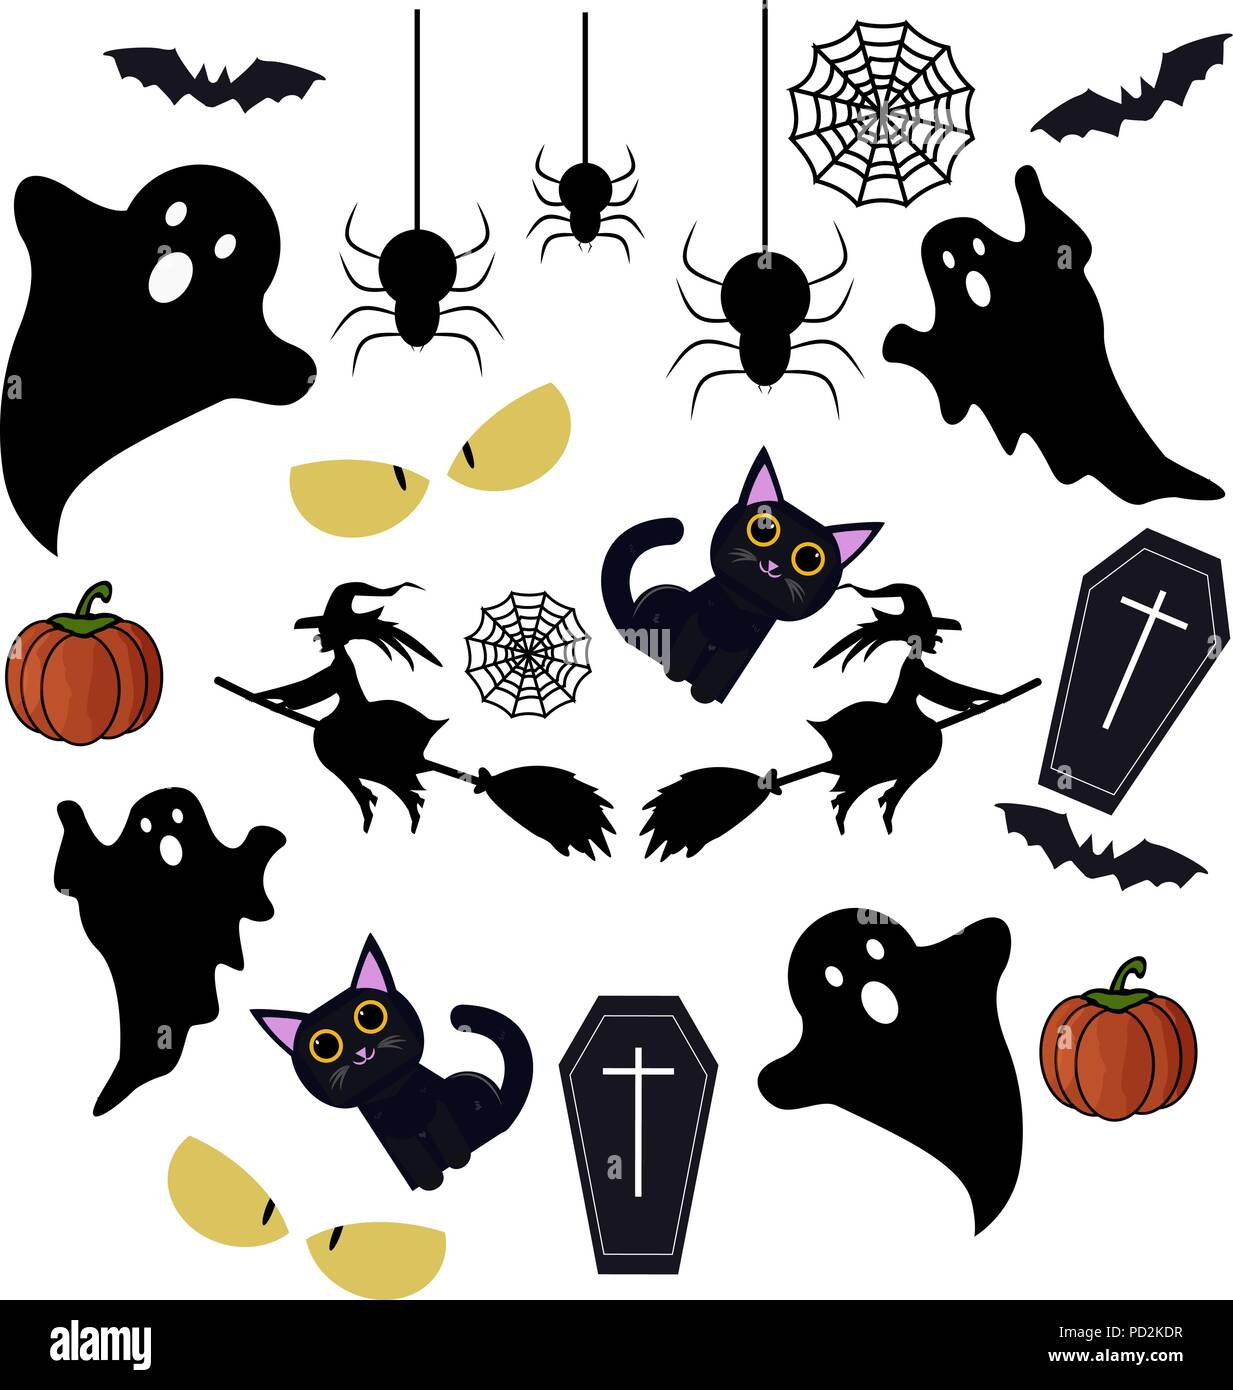 Feliz Halloween elementos de diseño. Elementos de diseño de Halloween, logotipos, insignias, rótulos, iconos y objetos. Ilustración del Vector